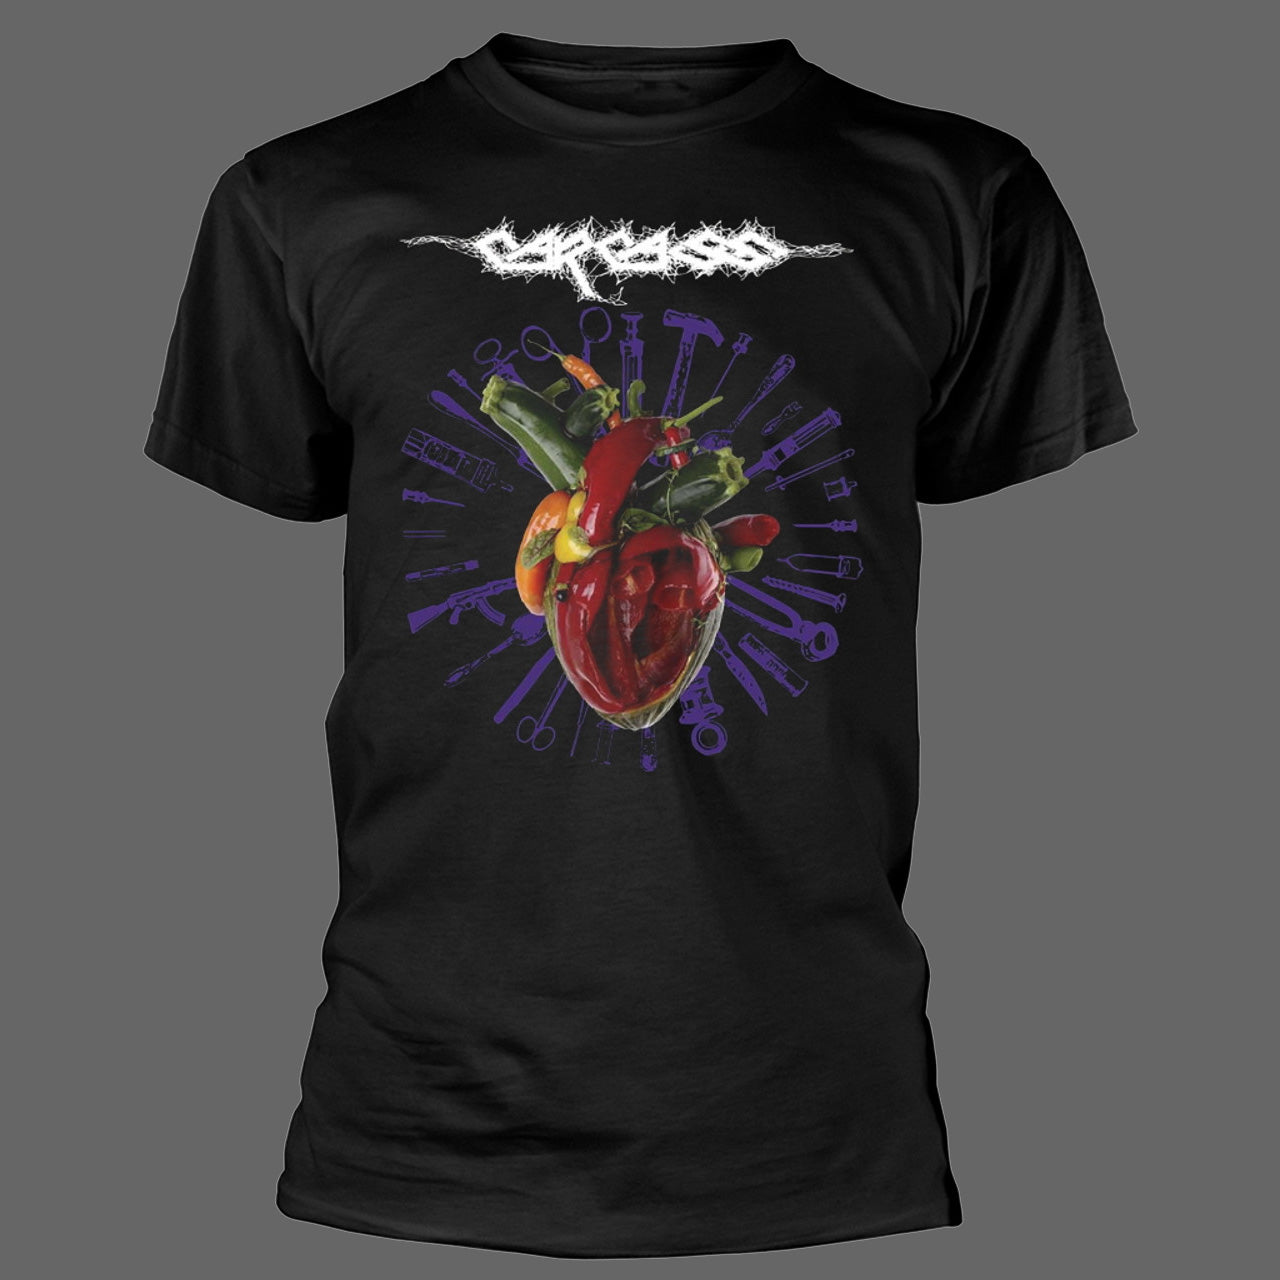 Carcass - Torn Arteries (T-Shirt)